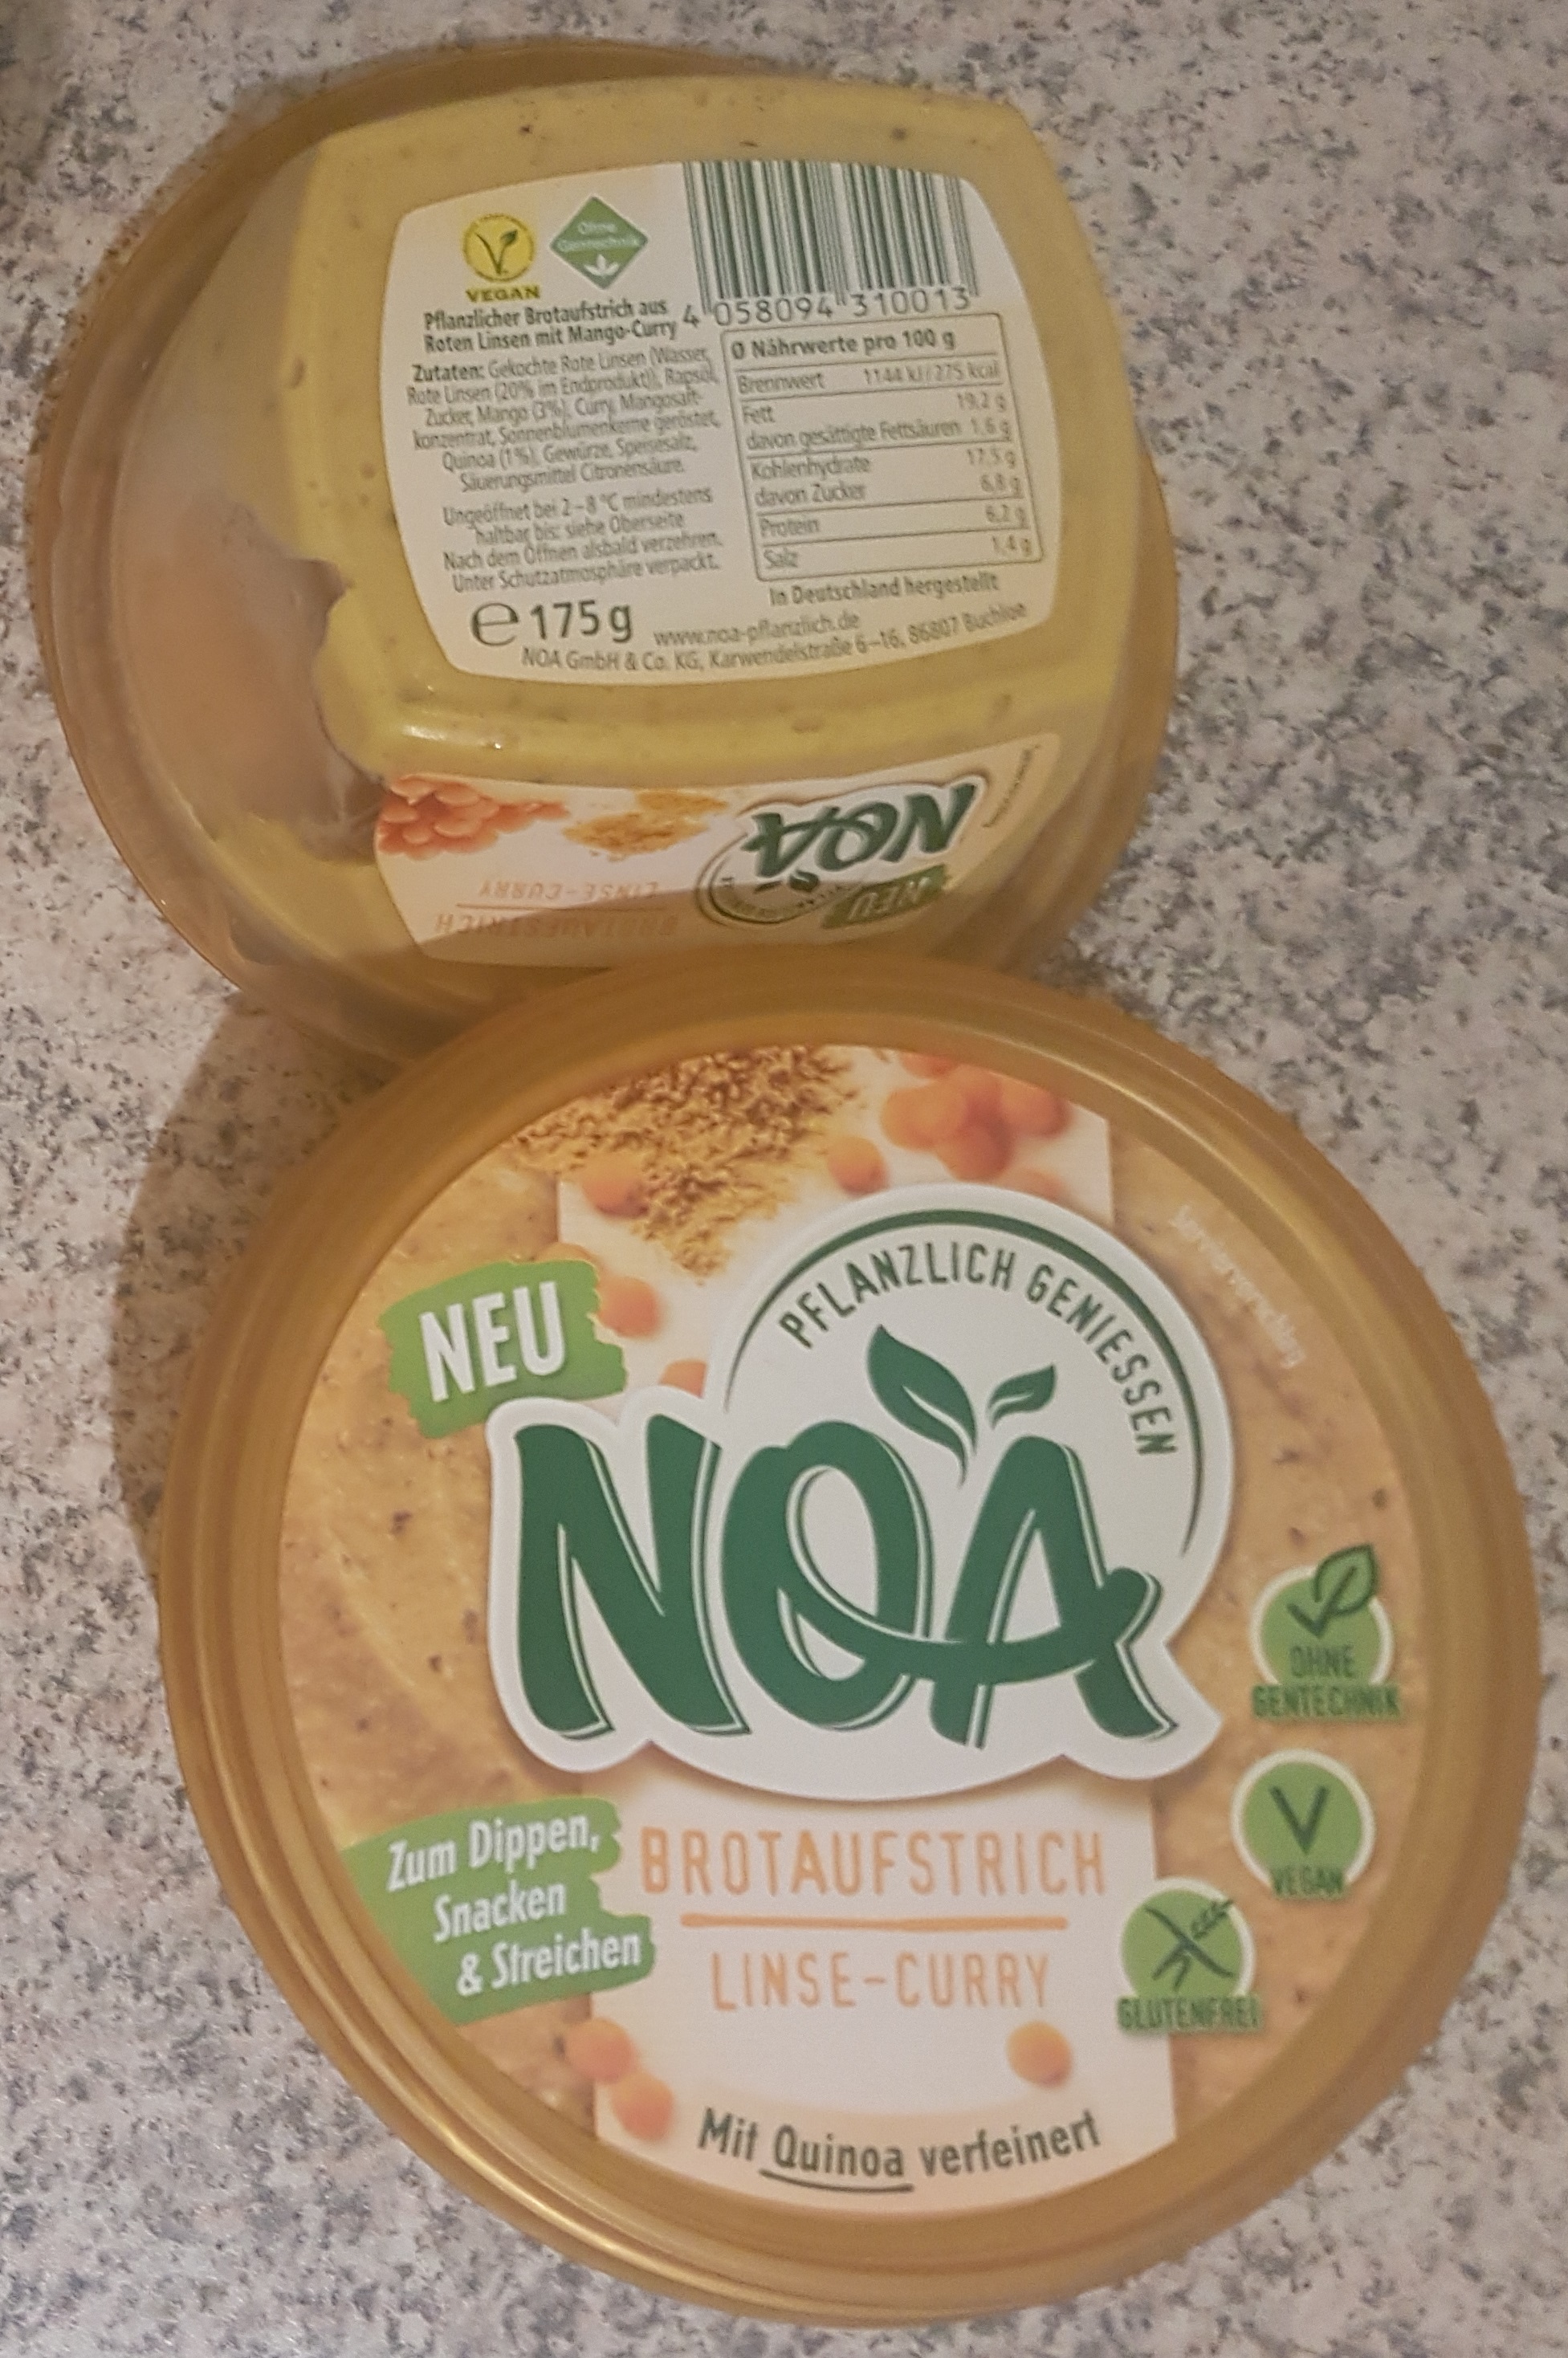 noa-linse-curry-brotaufstrich